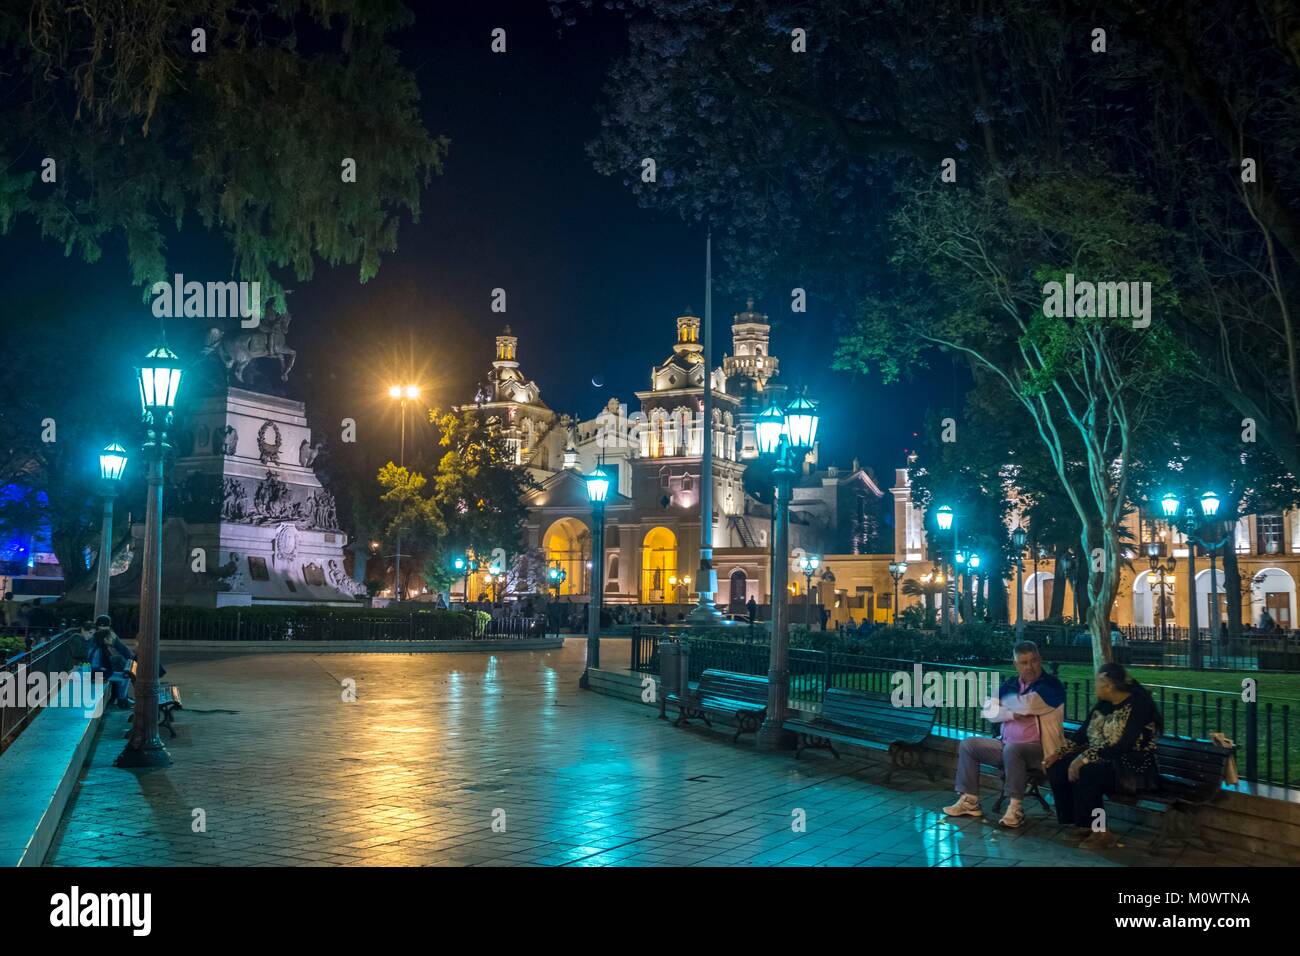 L'Argentina,in provincia di Cordoba,Cordoba,Plaza San Martin,cattedrale Foto Stock